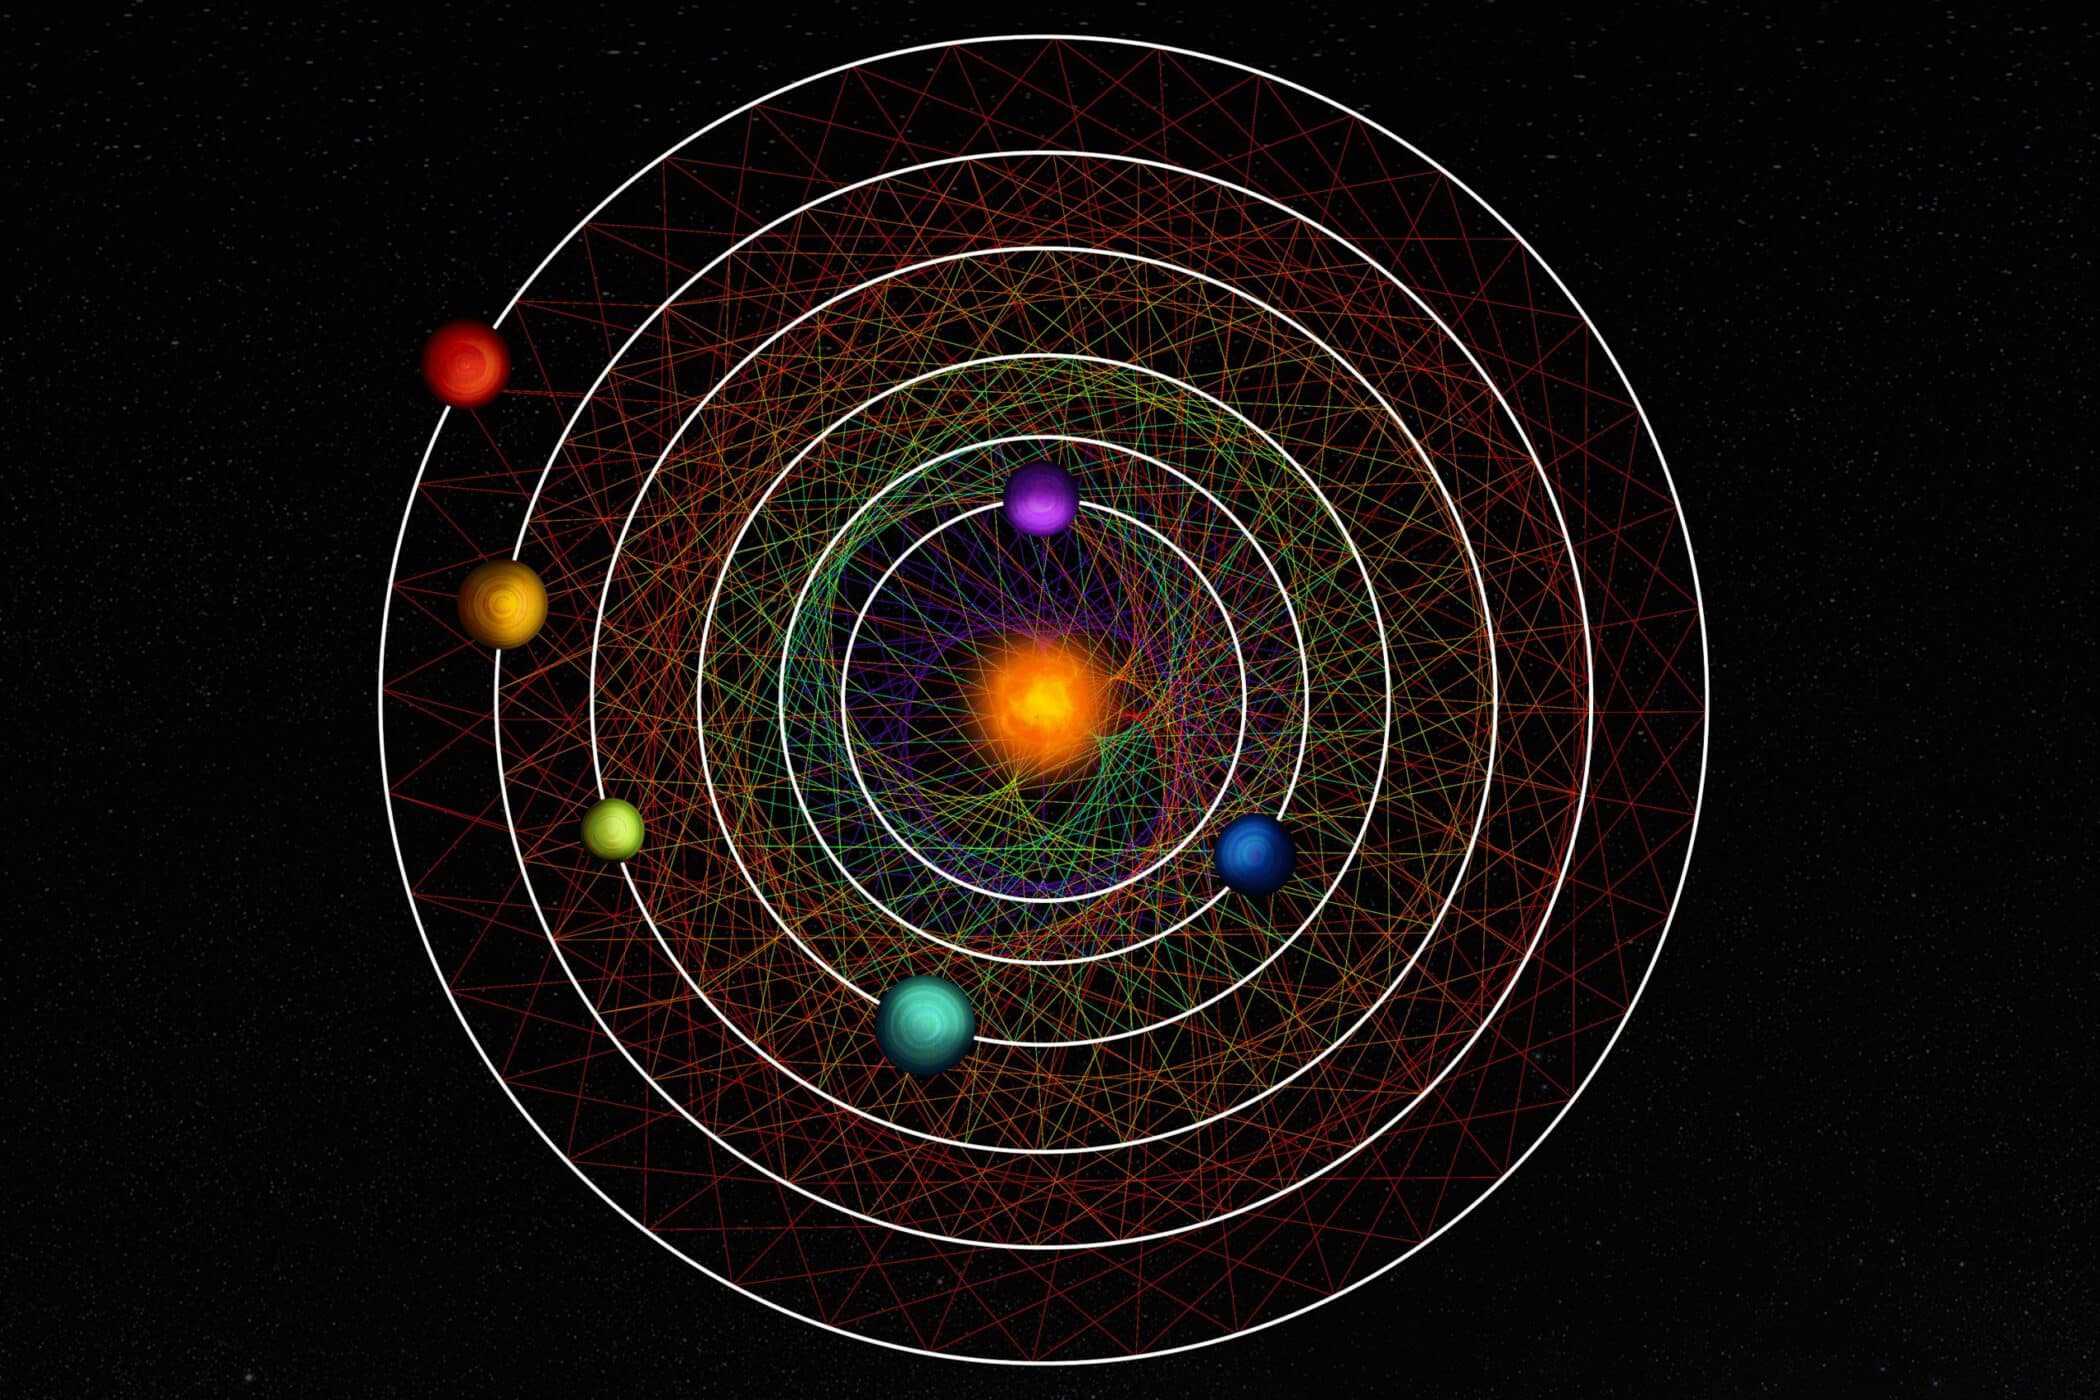 100光年先に「完璧な軌道」を描く星系を発見